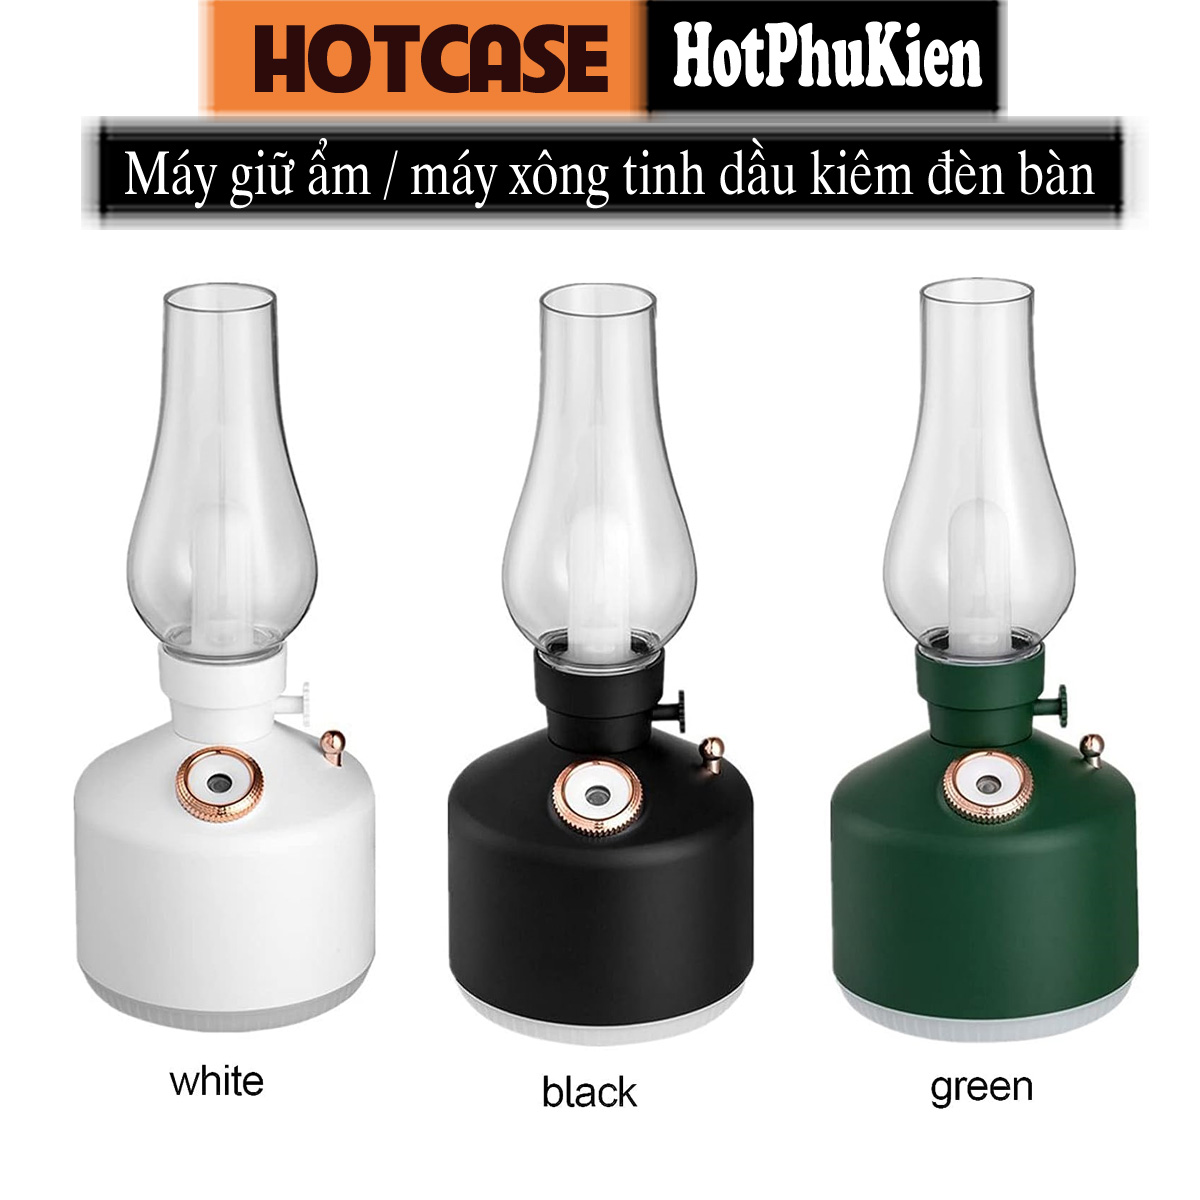 Đèn xông tinh dầu không dây tạo độ ẩm không khí kiêm đèn ngủ để bàn hiệu HOTCASE Vintage Lamp Humidifier Sức chứa 260ml, 8h giữ ẩm, tự ngắt khi hết nước, thiết kế dạng đèn Vintage sang trọng - hàng nhập khẩu